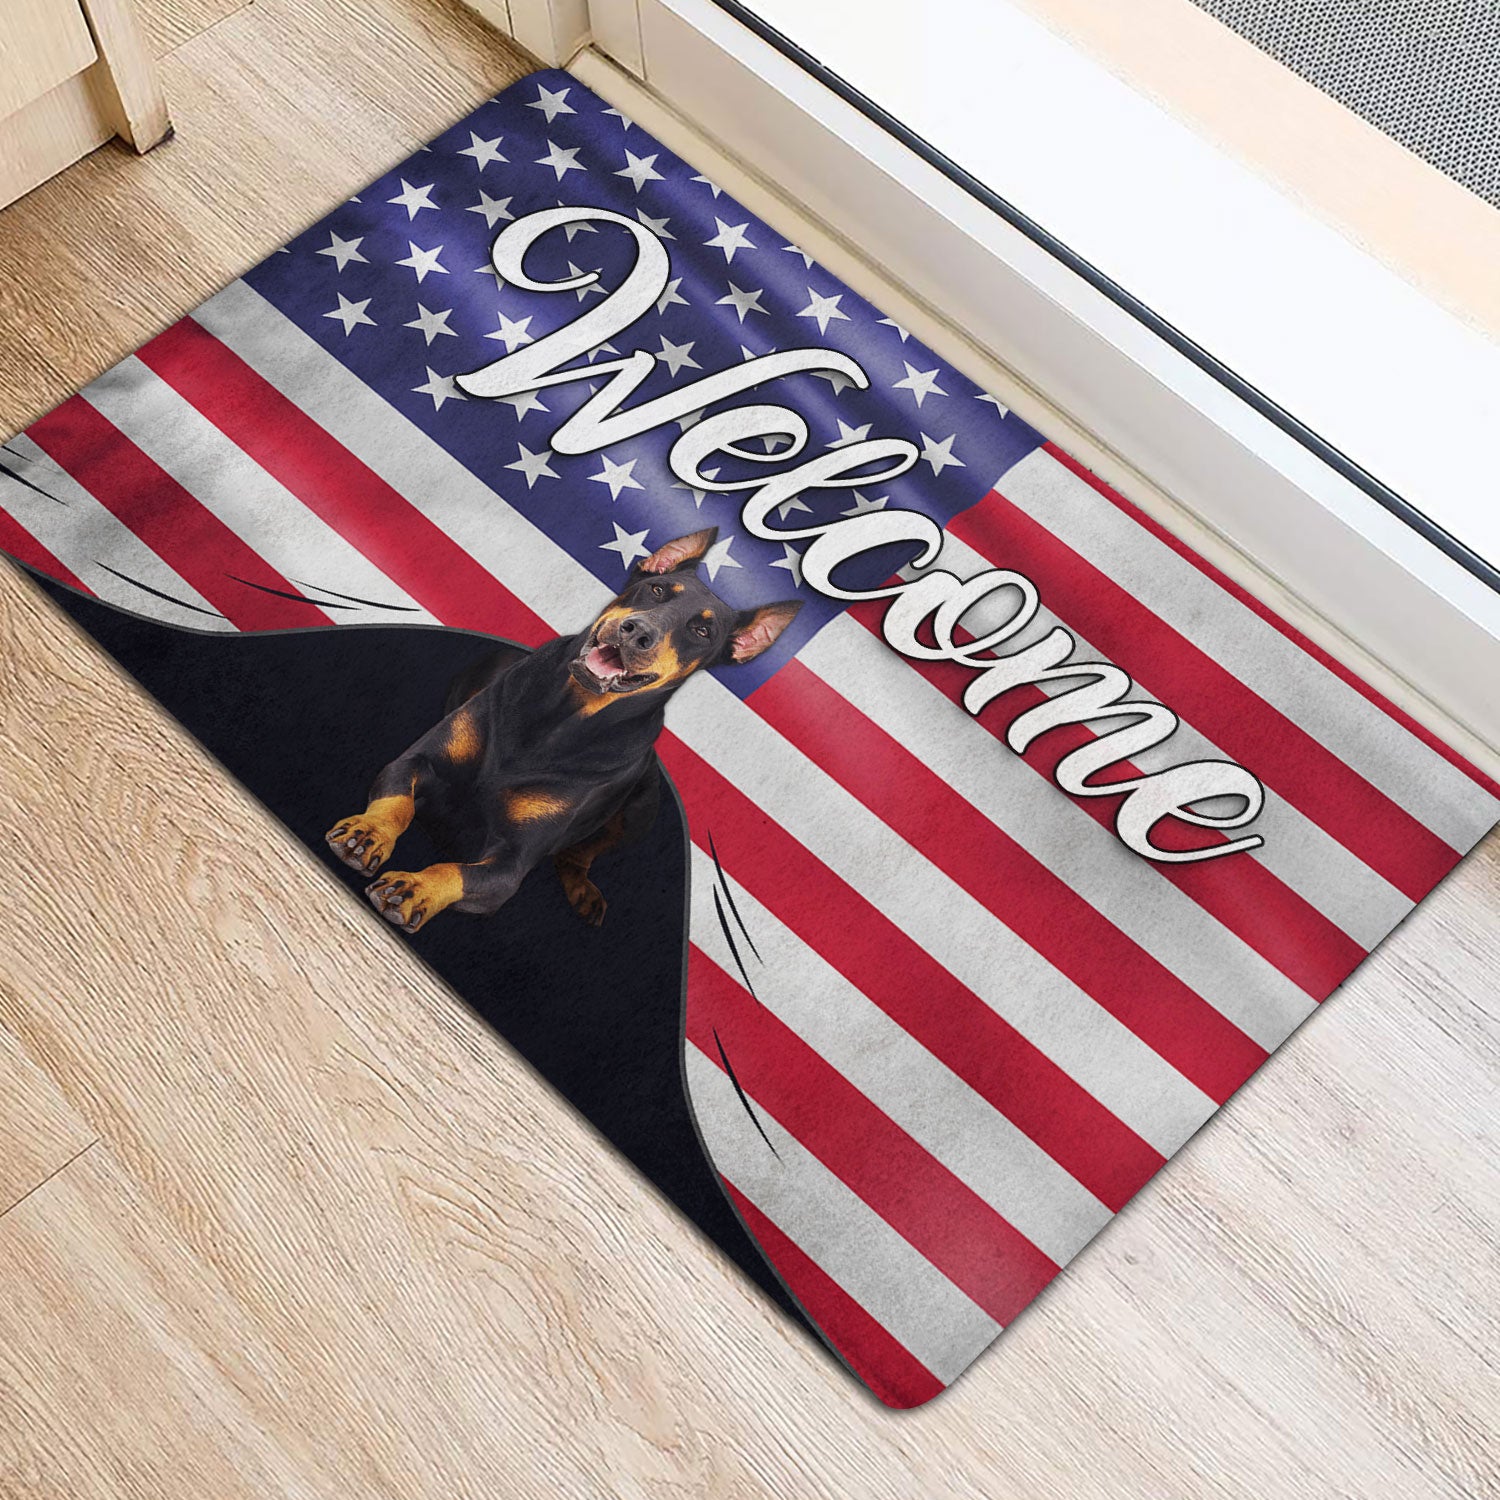 Ohaprints-Doormat-Outdoor-Indoor-Dobermann-Dog-Welcome-American-Flag-Usa-Patriotic-Rubber-Door-Mat-79-